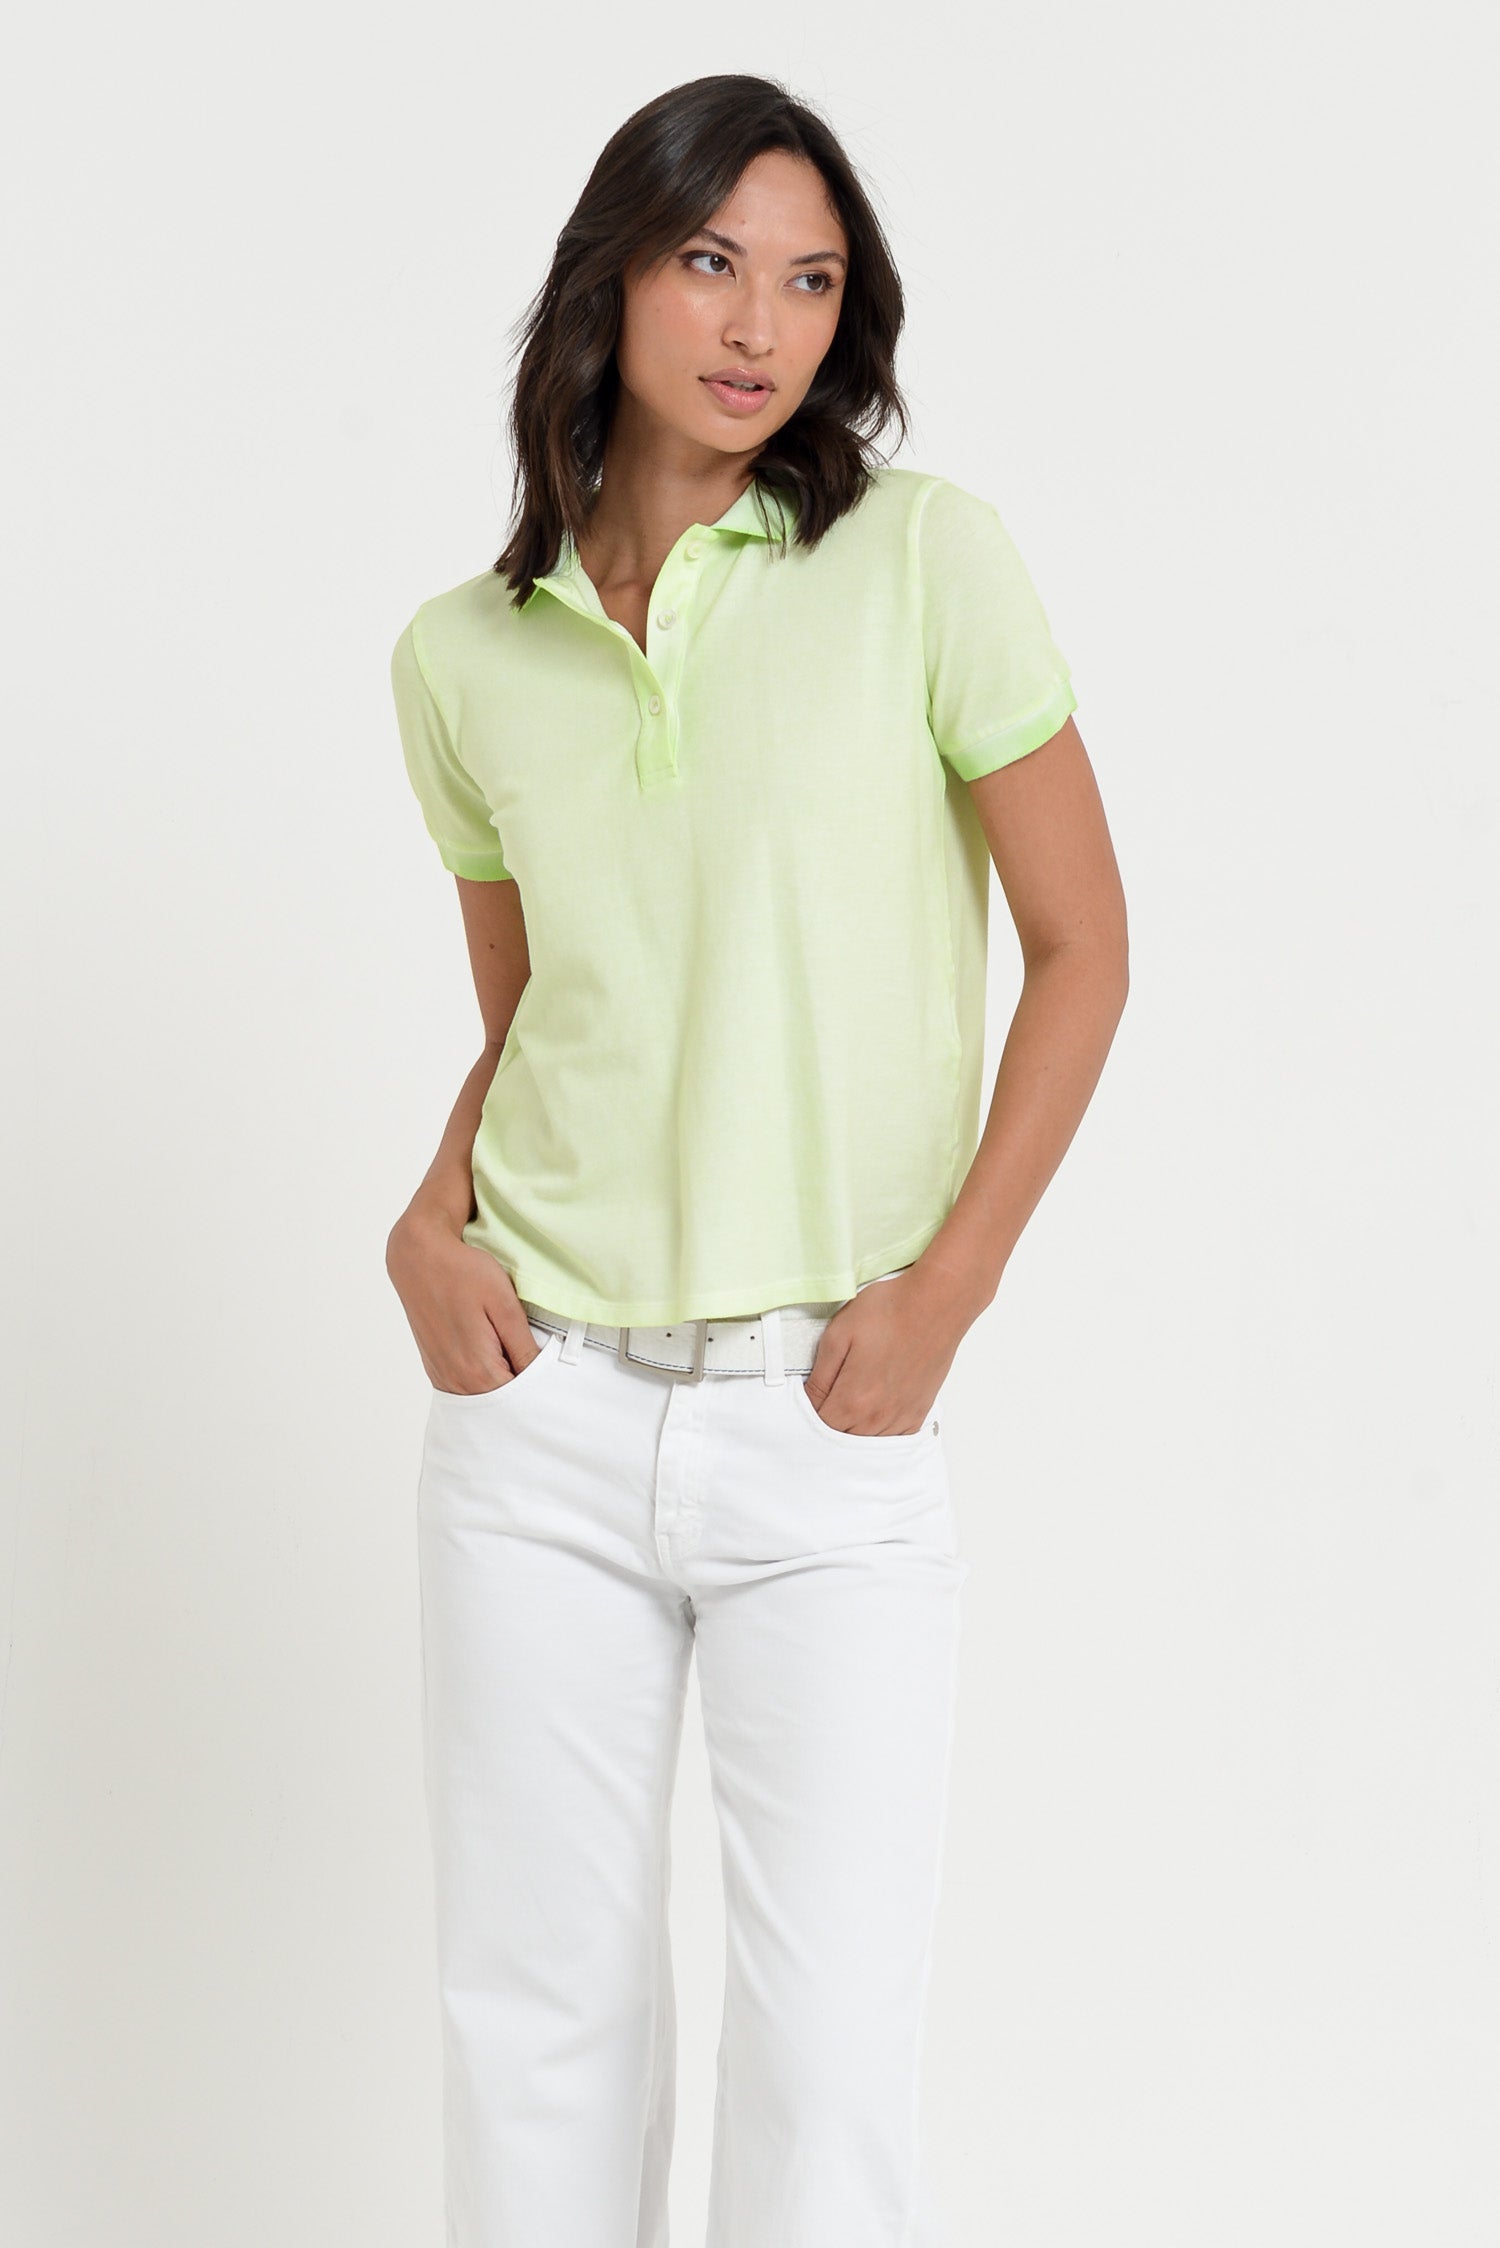 Crystal Polo - Women's Pique Polo Shirt - Margarita